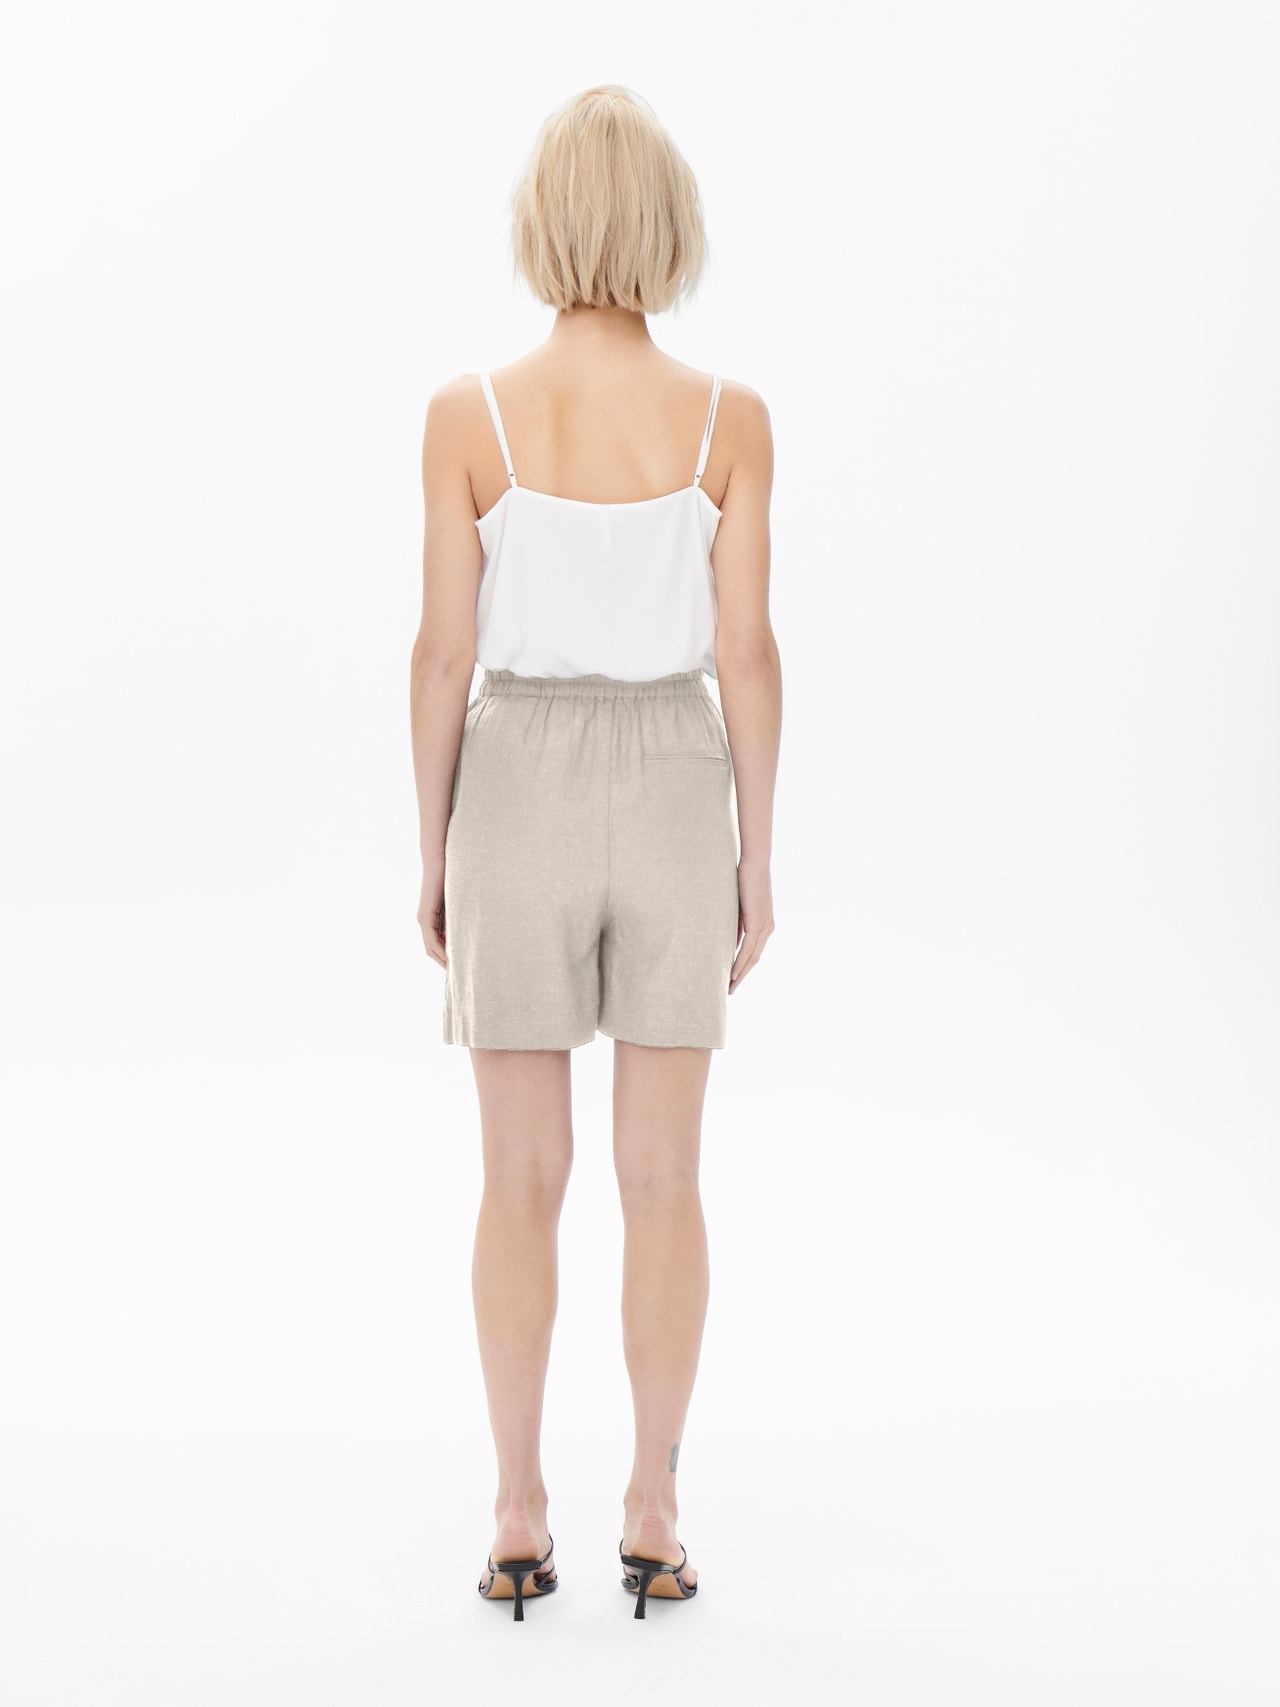 ONLY High waisted linen blend Shorts -Moonbeam - 15259587